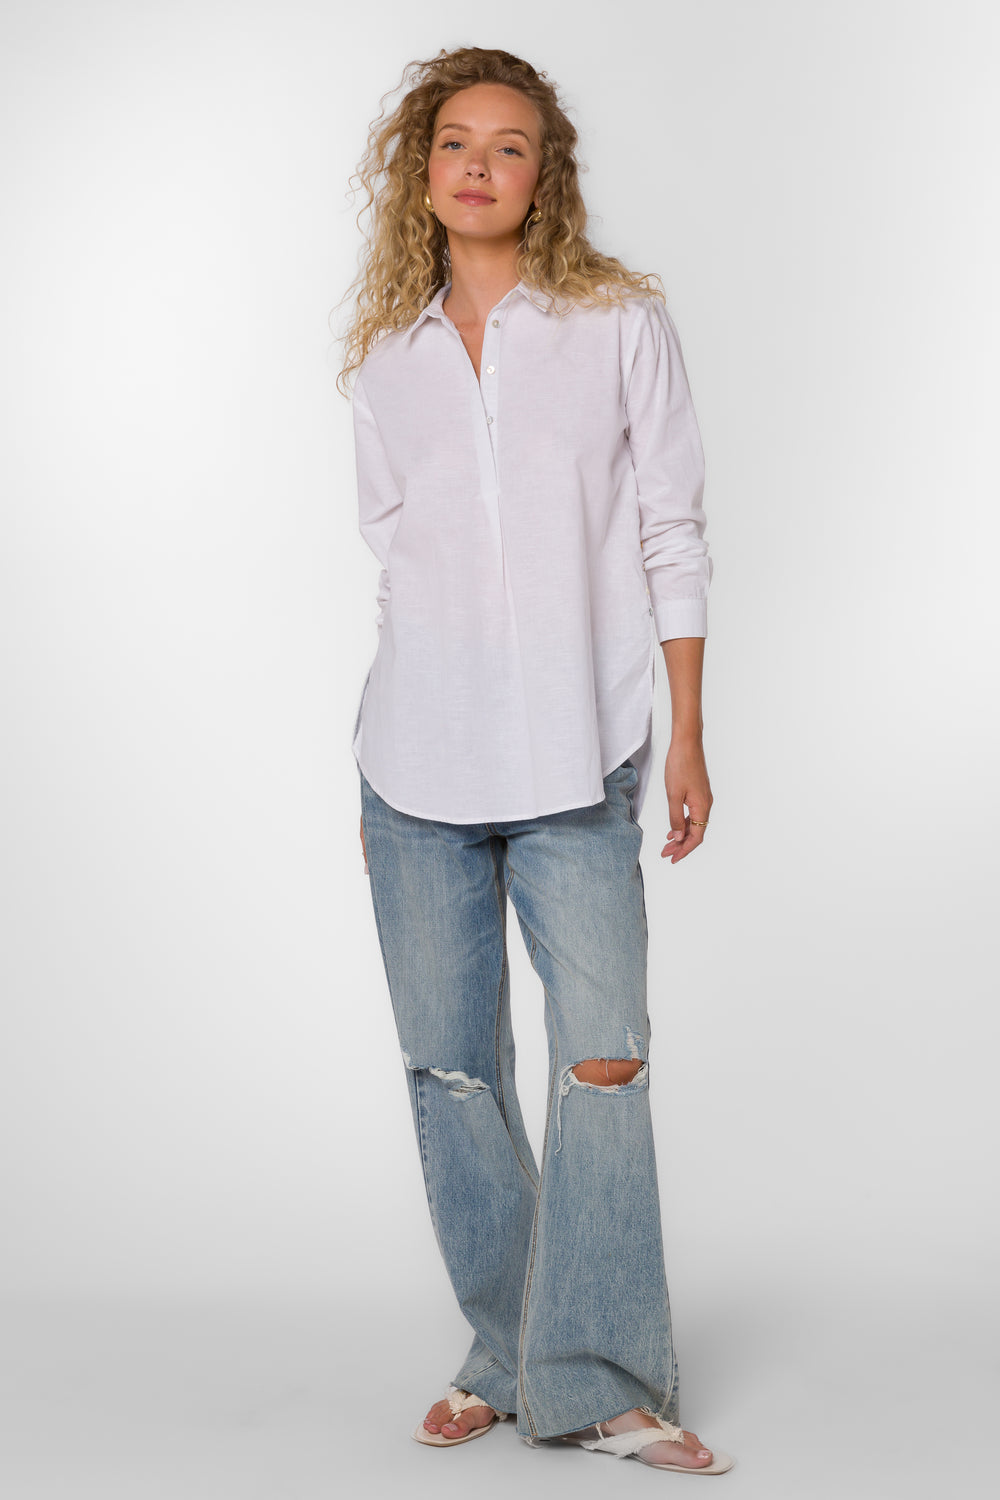 June Optic White Shirt - Tops - Velvet Heart Clothing